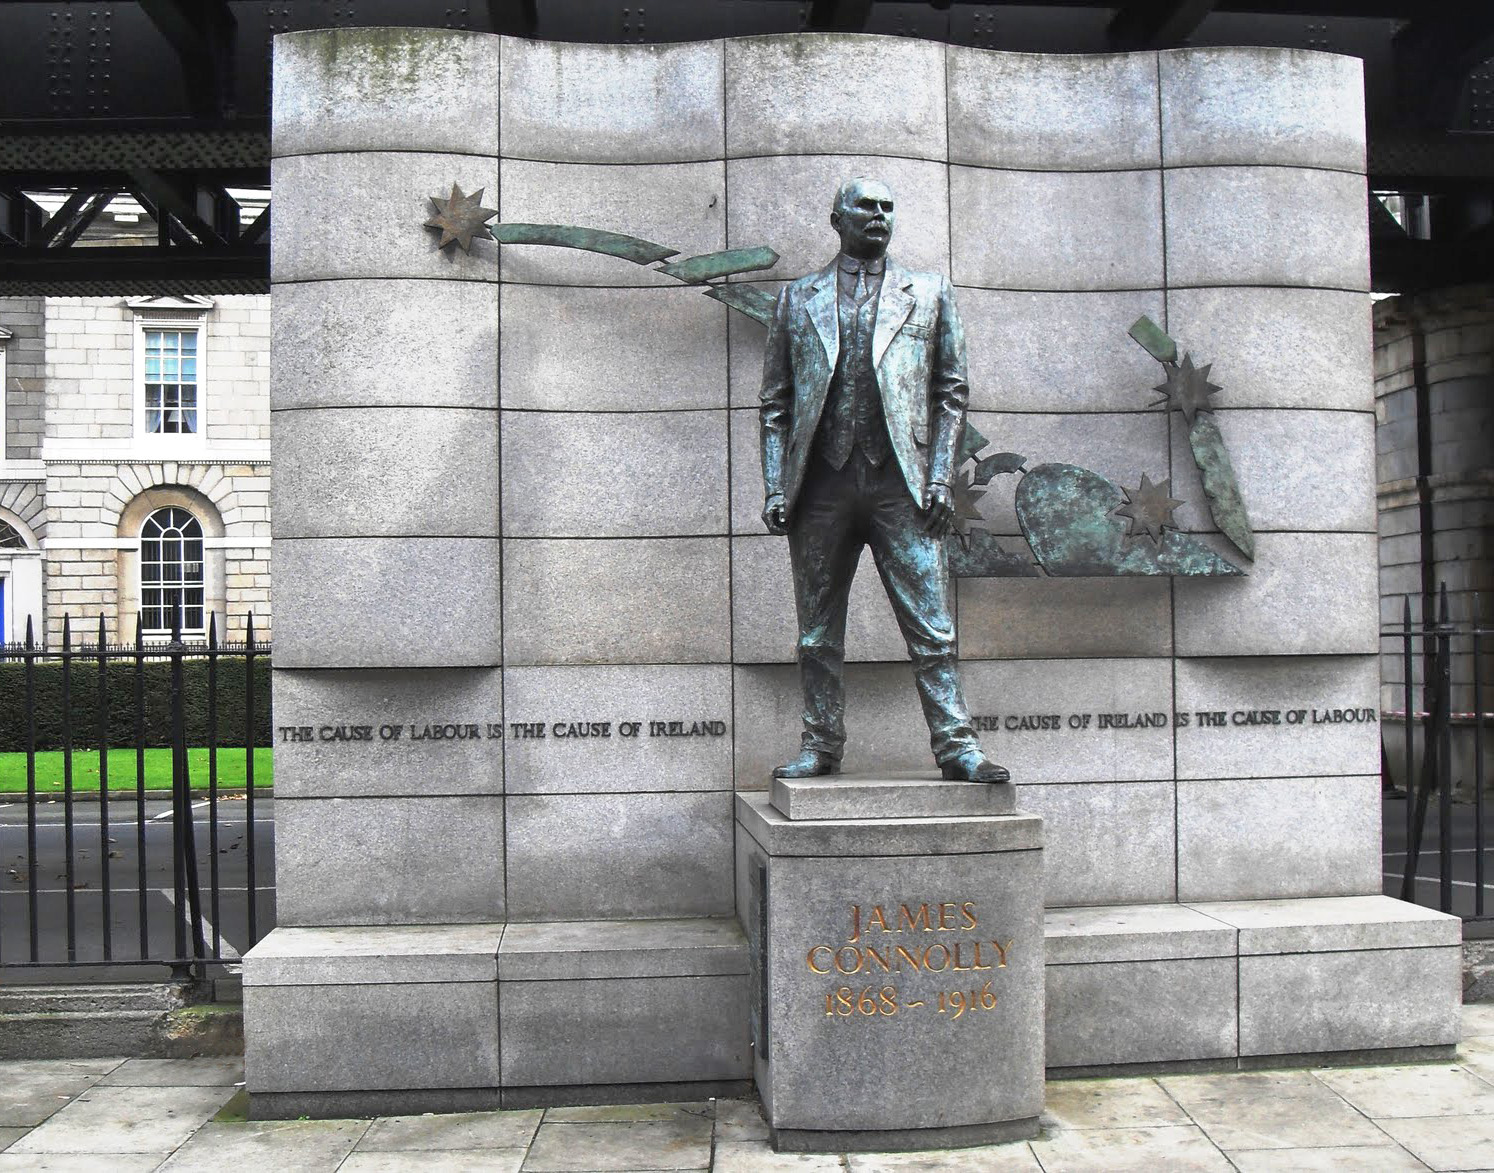 The James Connolly Memorial.